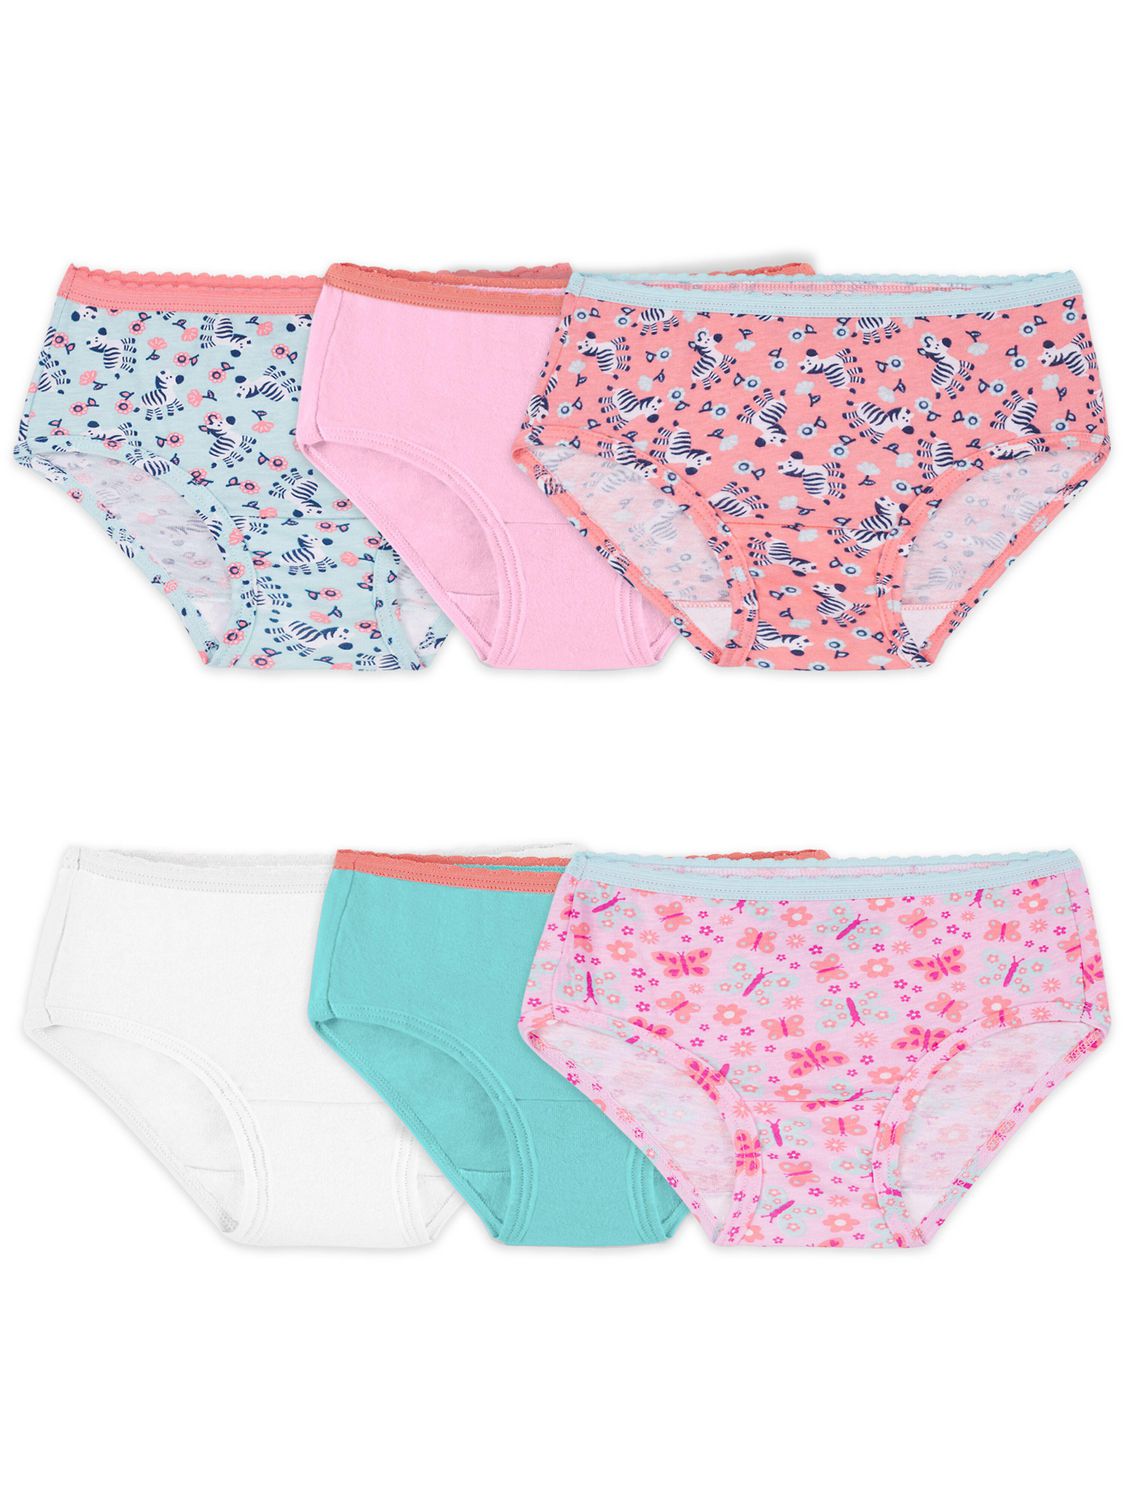 Parent's Choice Girls Training Pants, 4T-5T, 33 pants 